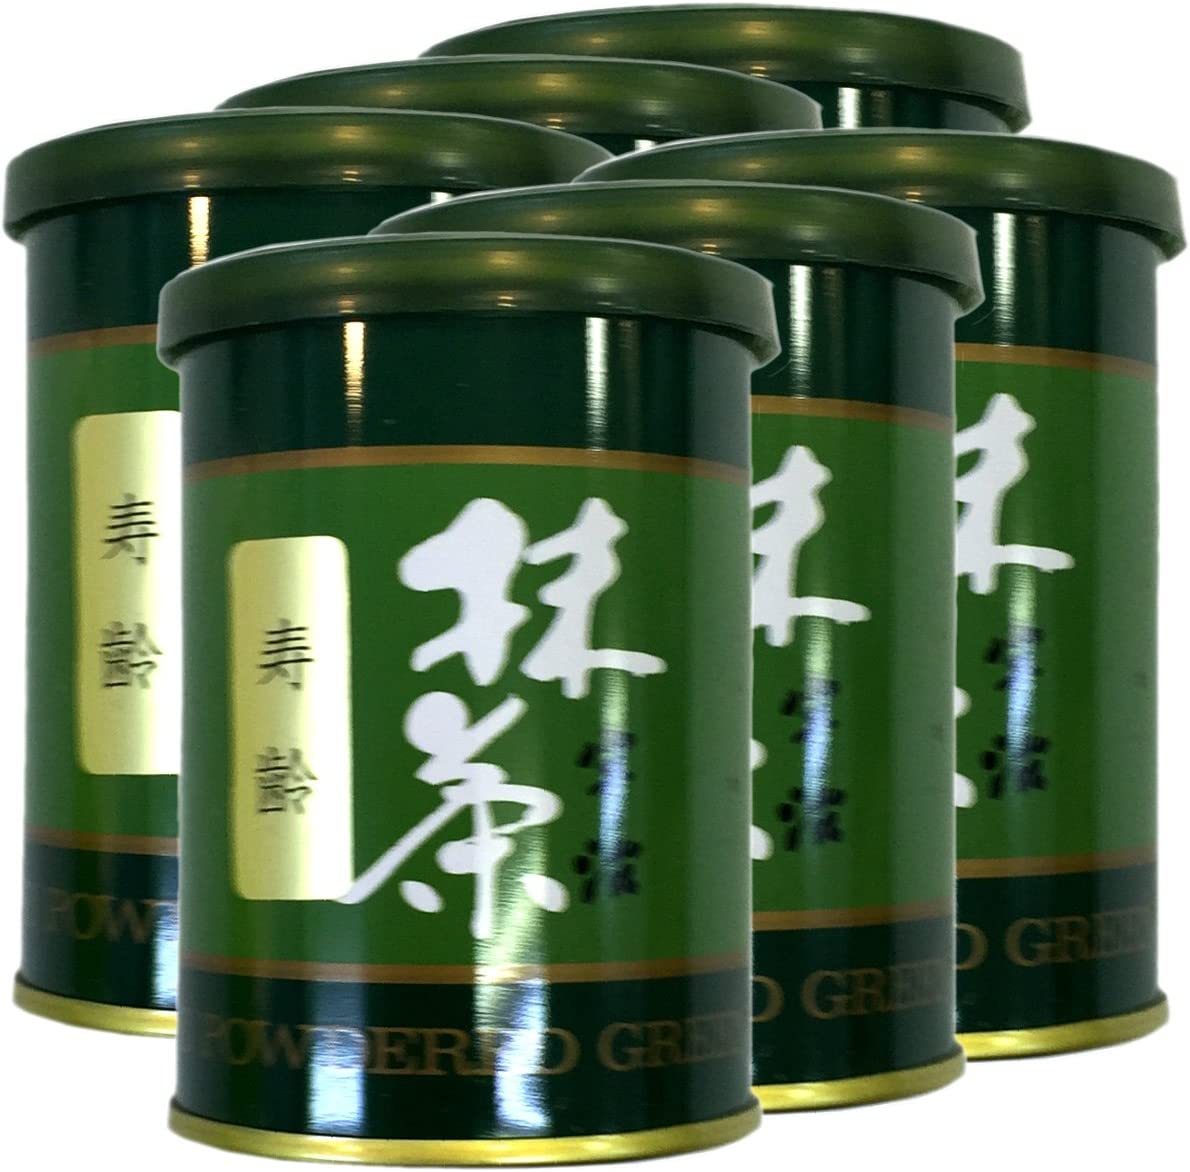 高級宇治抹茶抹茶 粉末 寿齢 40g ×6個セット 巣鴨のお茶屋さん 山年園-